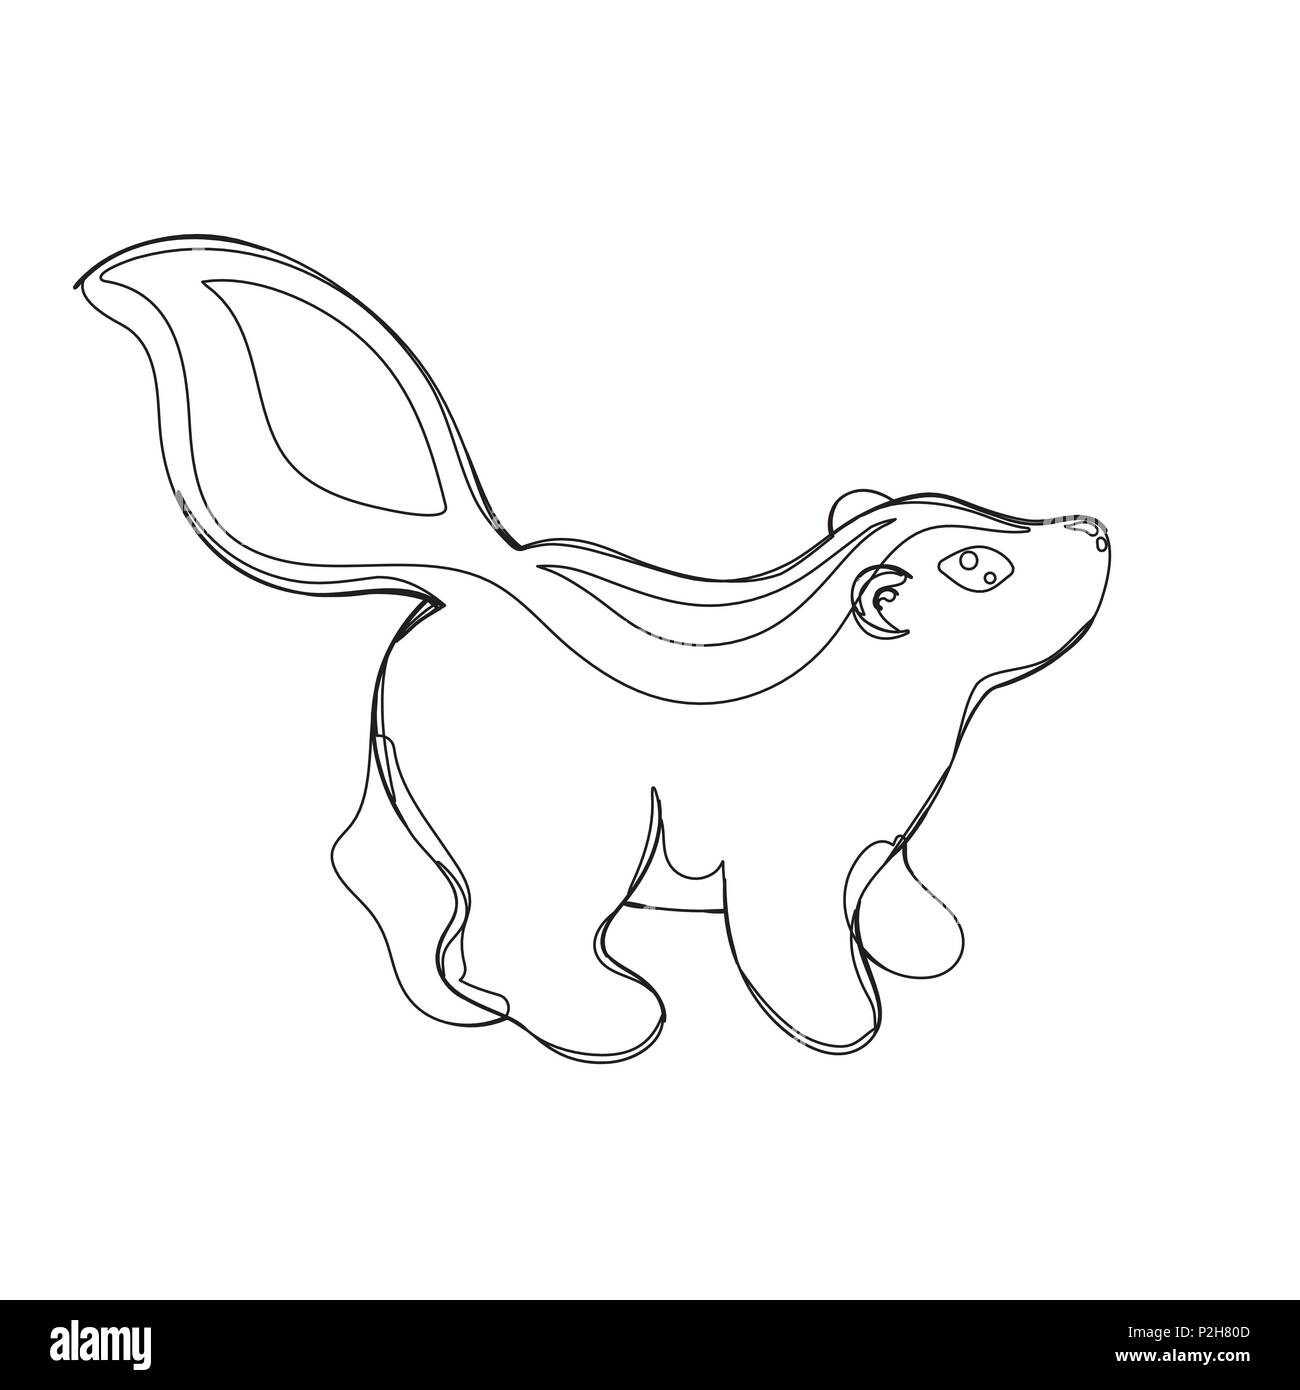 Illustrazione Vettoriale di skunk nella linea ininterrotta di stile grafico, nero contorno contorno schizzo isolato su bianco Illustrazione Vettoriale